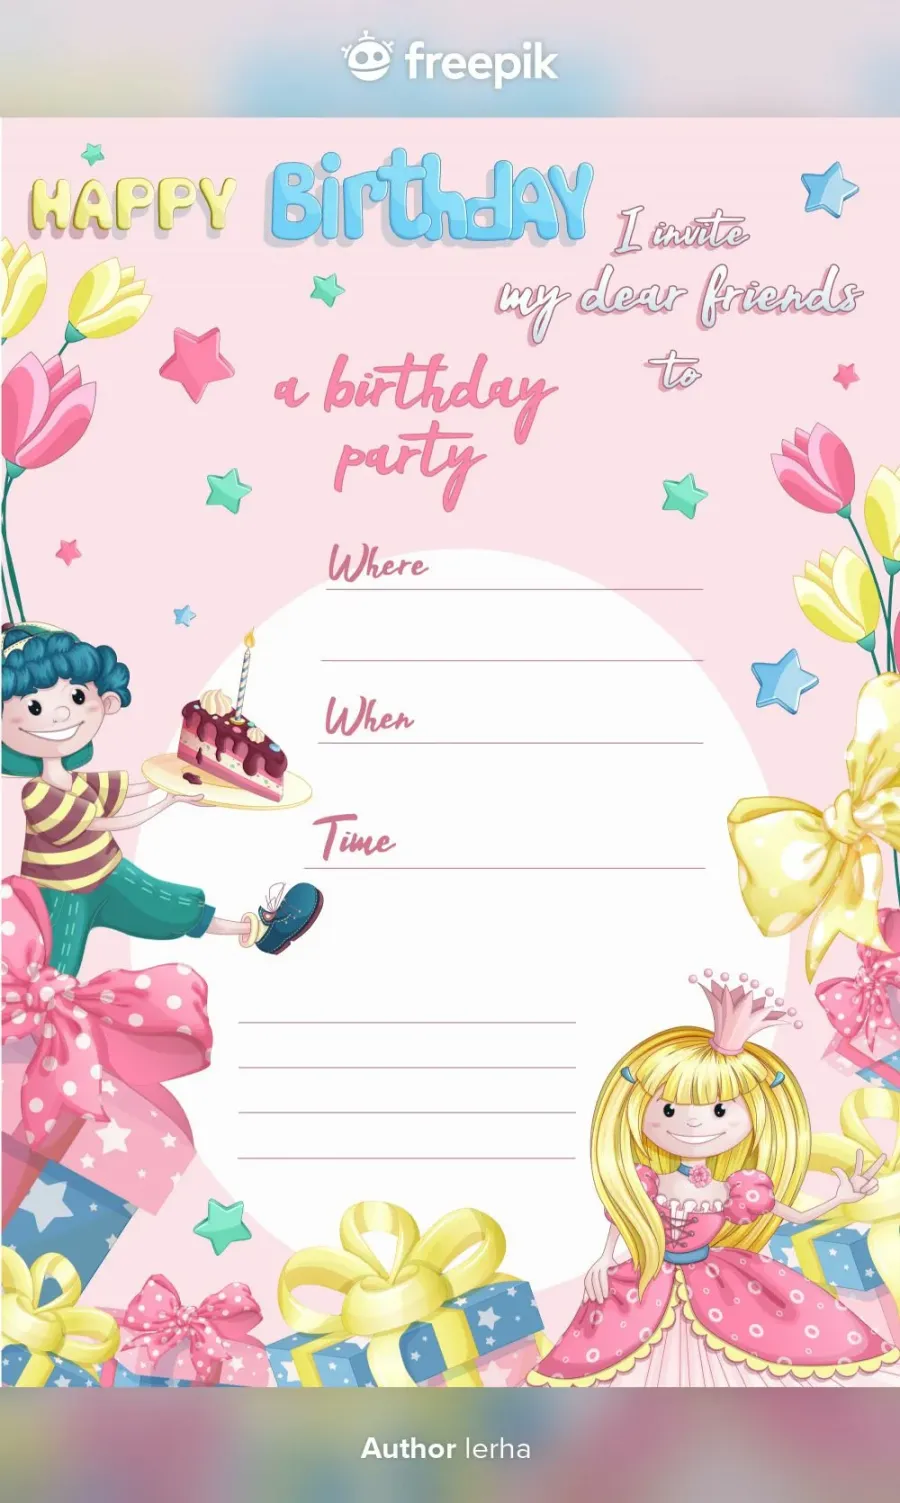 Приглашение на день рождения шаблоны девочке ребенка